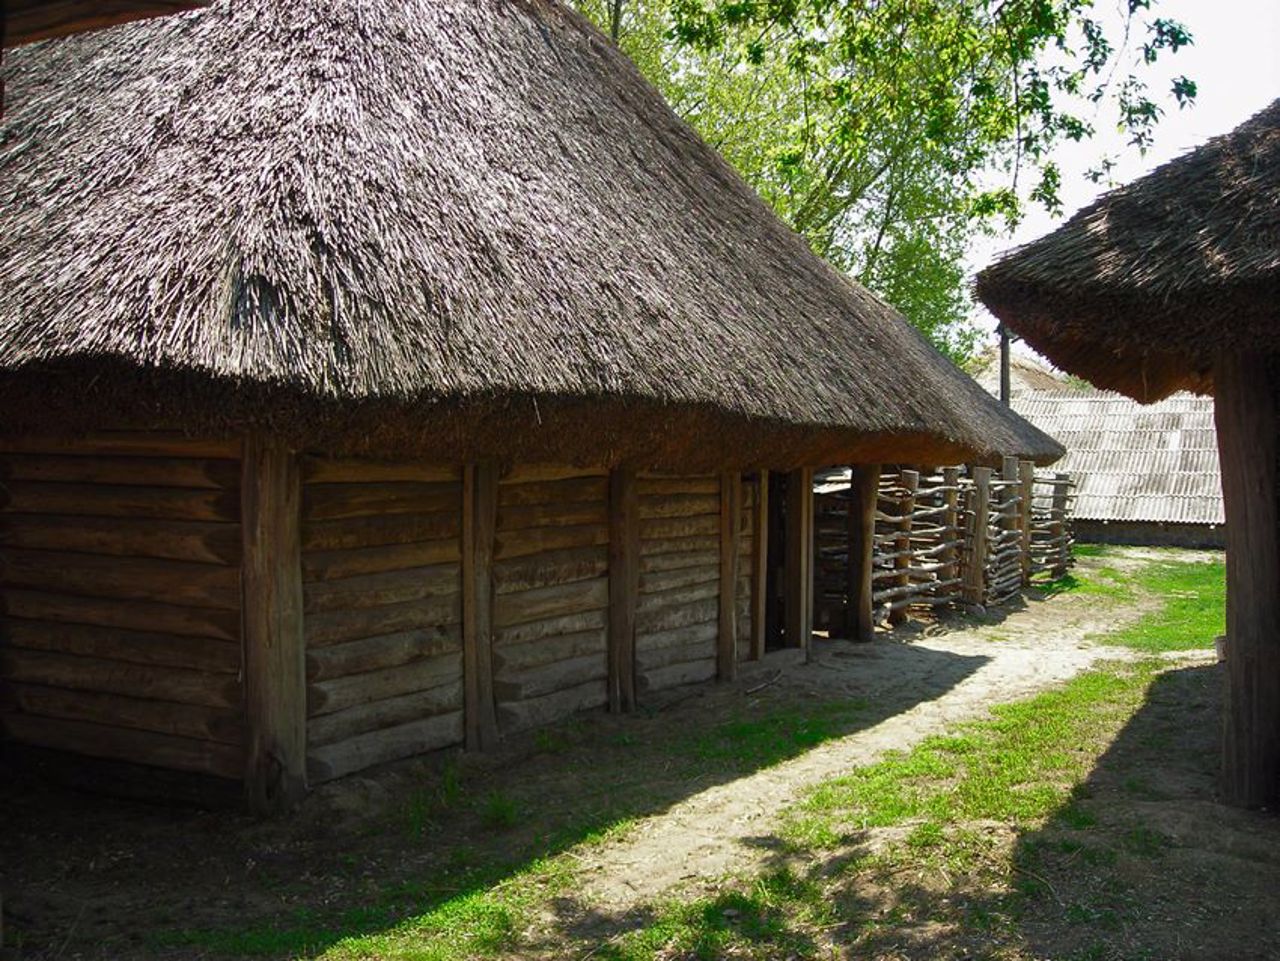 Museum "Cossack lands of Ukraine", Veremiivka